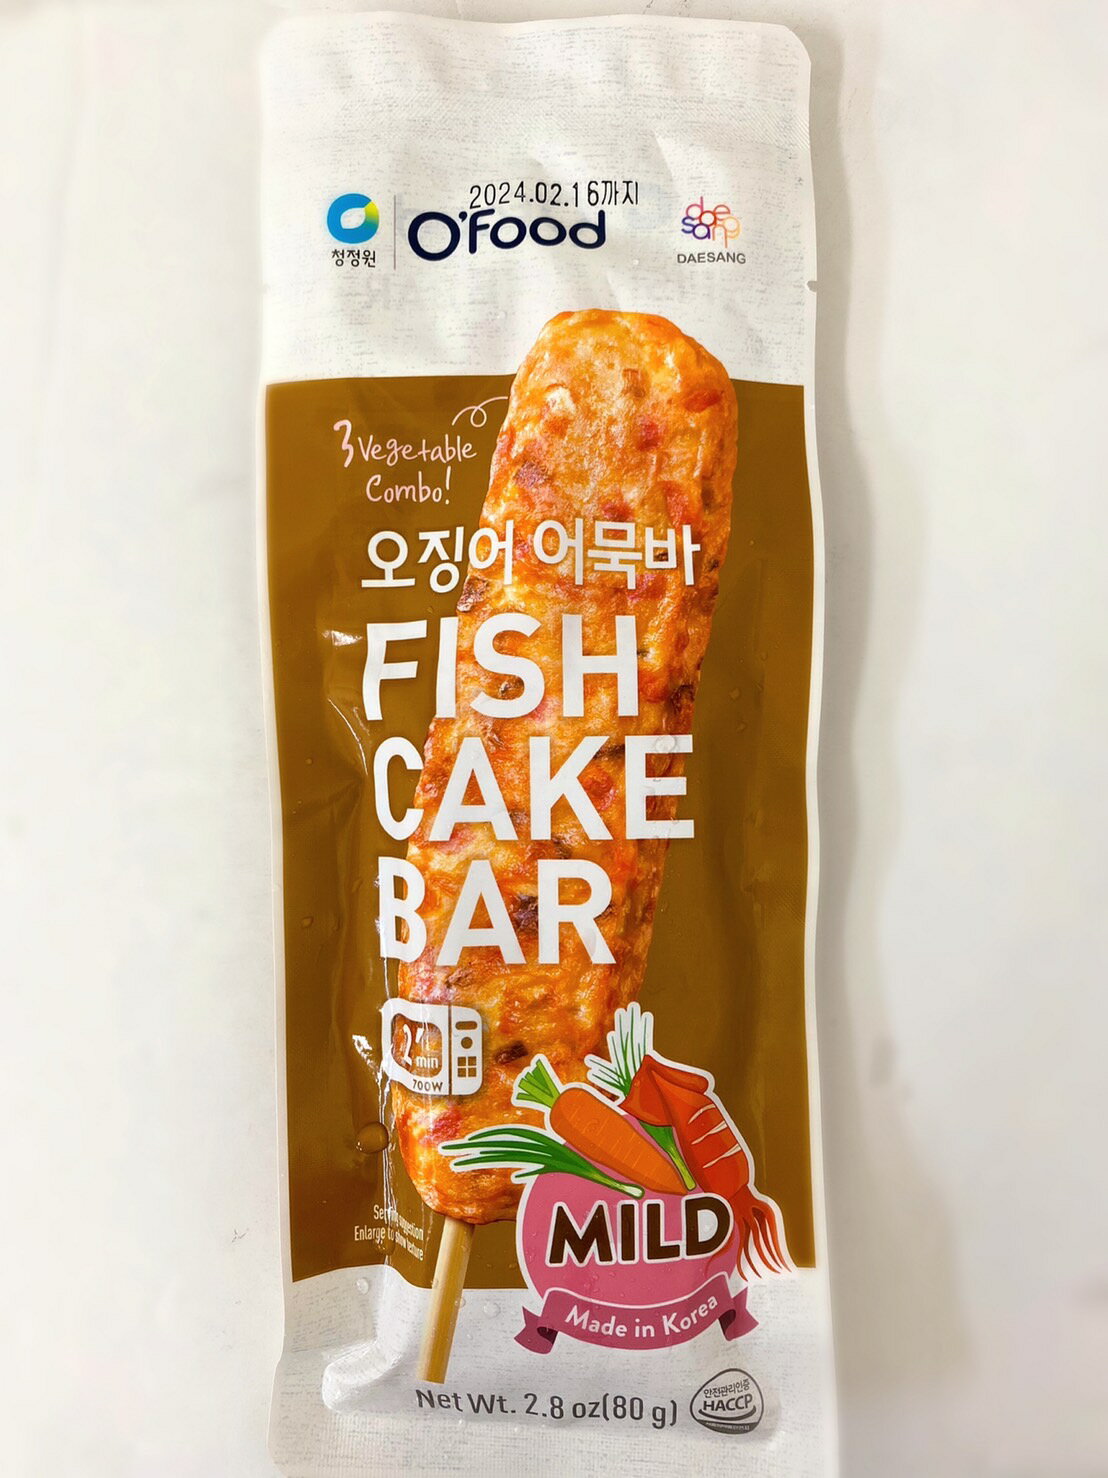 ・商品: O’food　おでんバー(FISH CAKE BAR)　マイルド味 30本入 ・保存方法: 冷凍室で保存してください。 ・原産地: 韓国 ・商品入荷によって商品パッケージが変わる場合がございます。予めご了承ください。